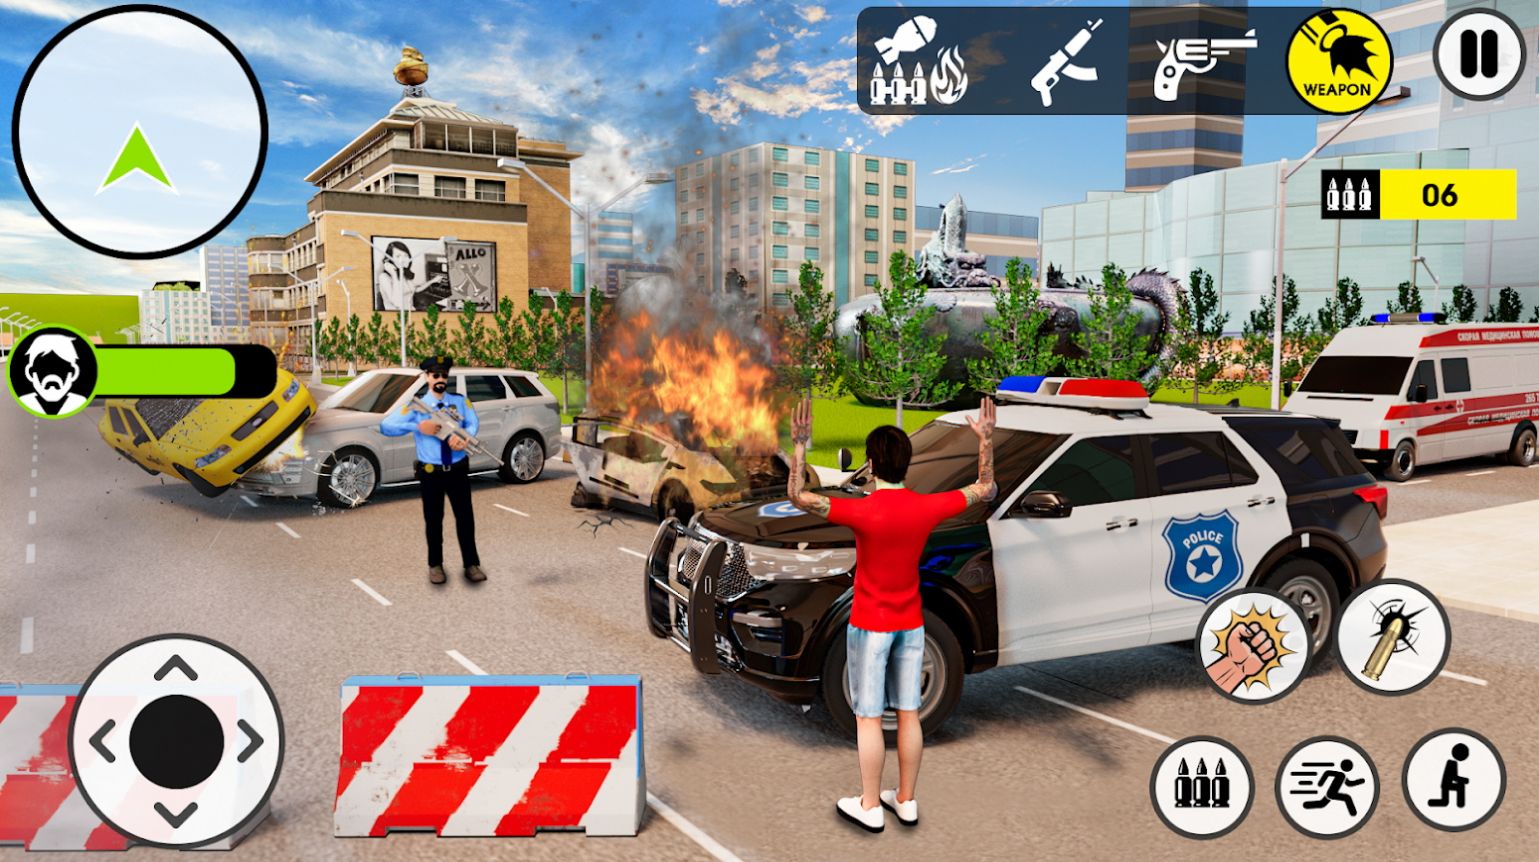 战术小队警察模拟器游戏官方版截图3: